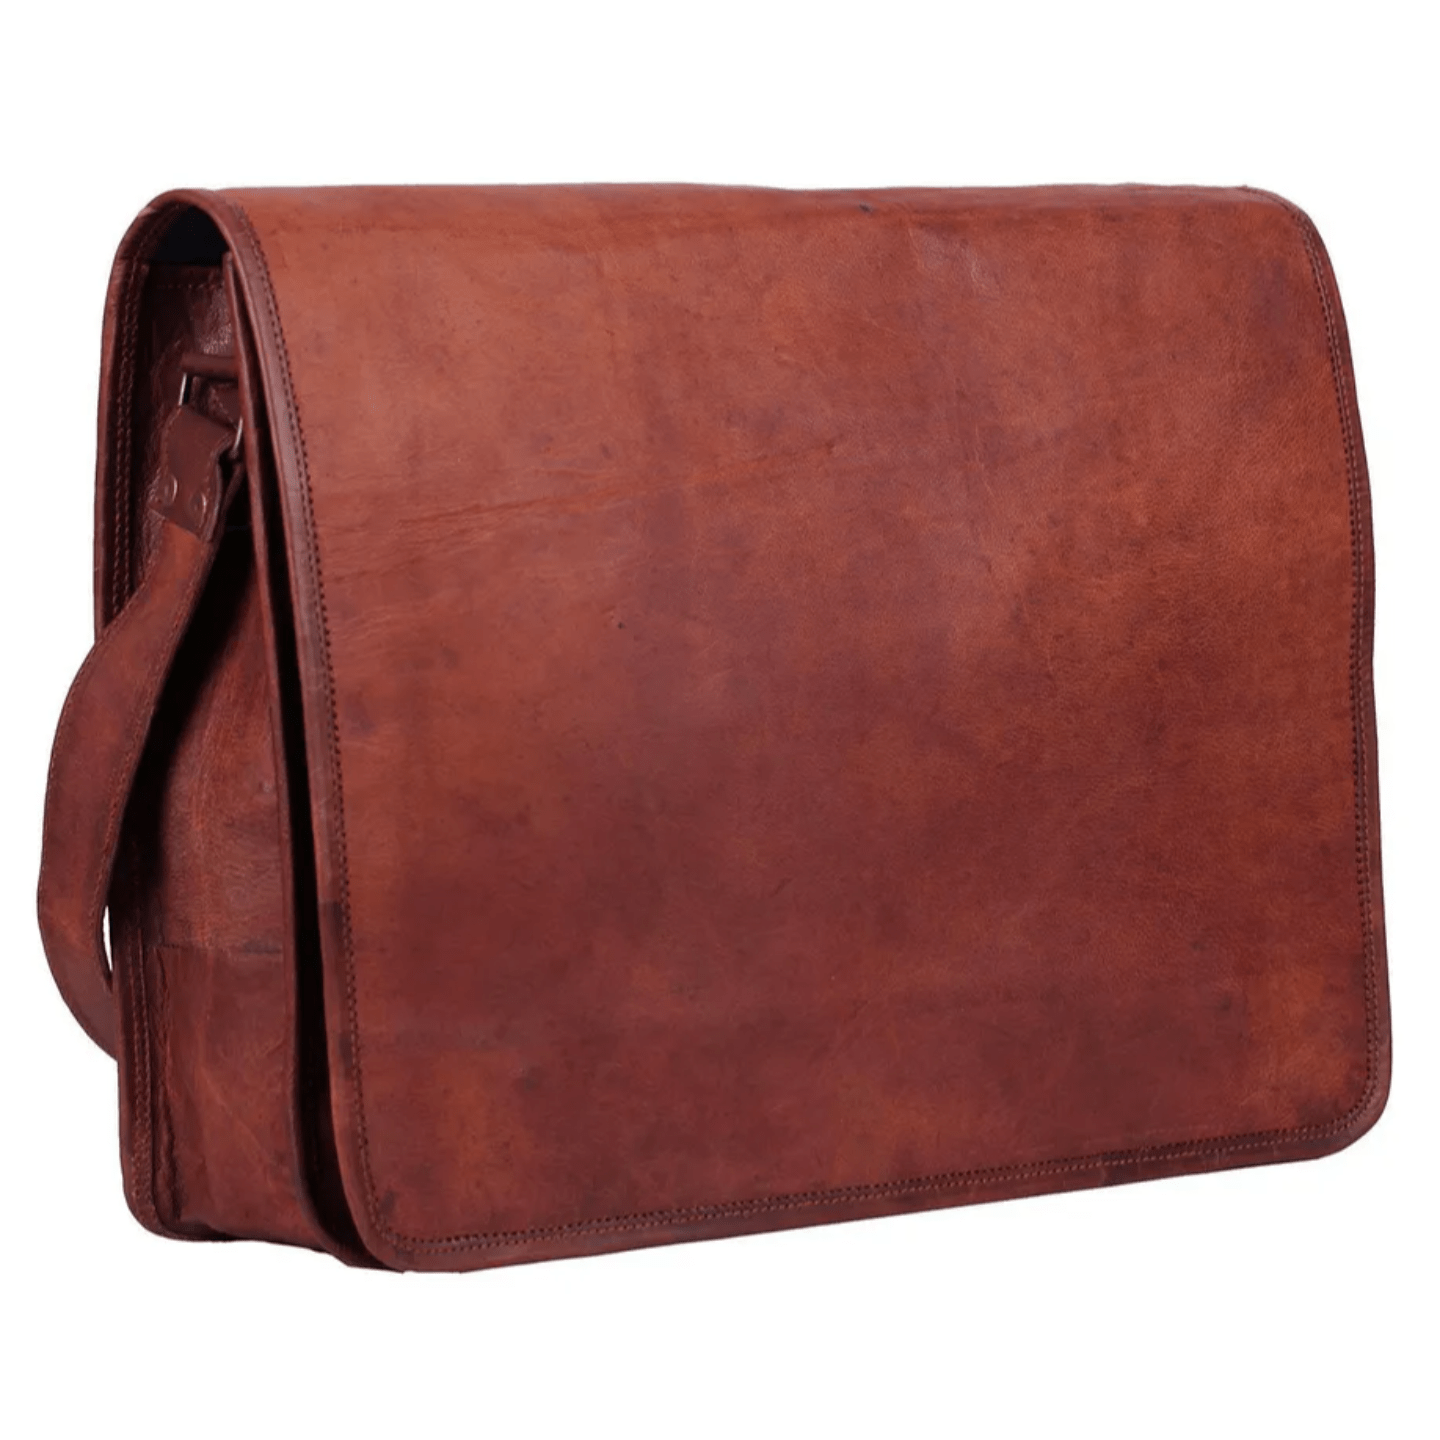 Bag Goat Leather Men New Vintage Brown S Messenger Laptop Shoulder Briefcase